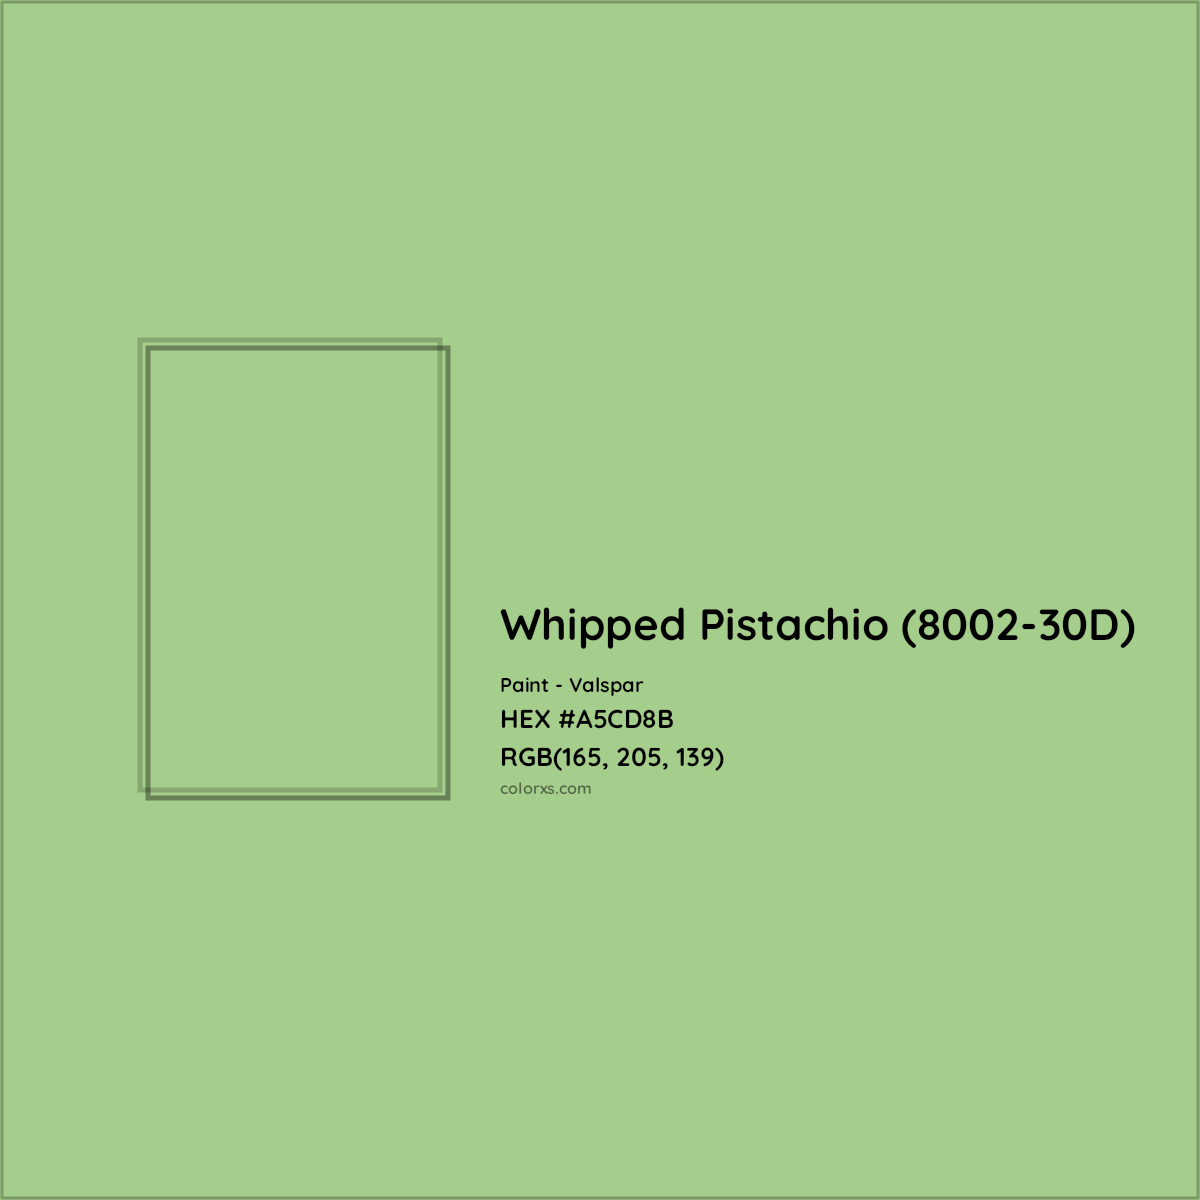 HEX #A5CD8B Whipped Pistachio (8002-30D) Paint Valspar - Color Code